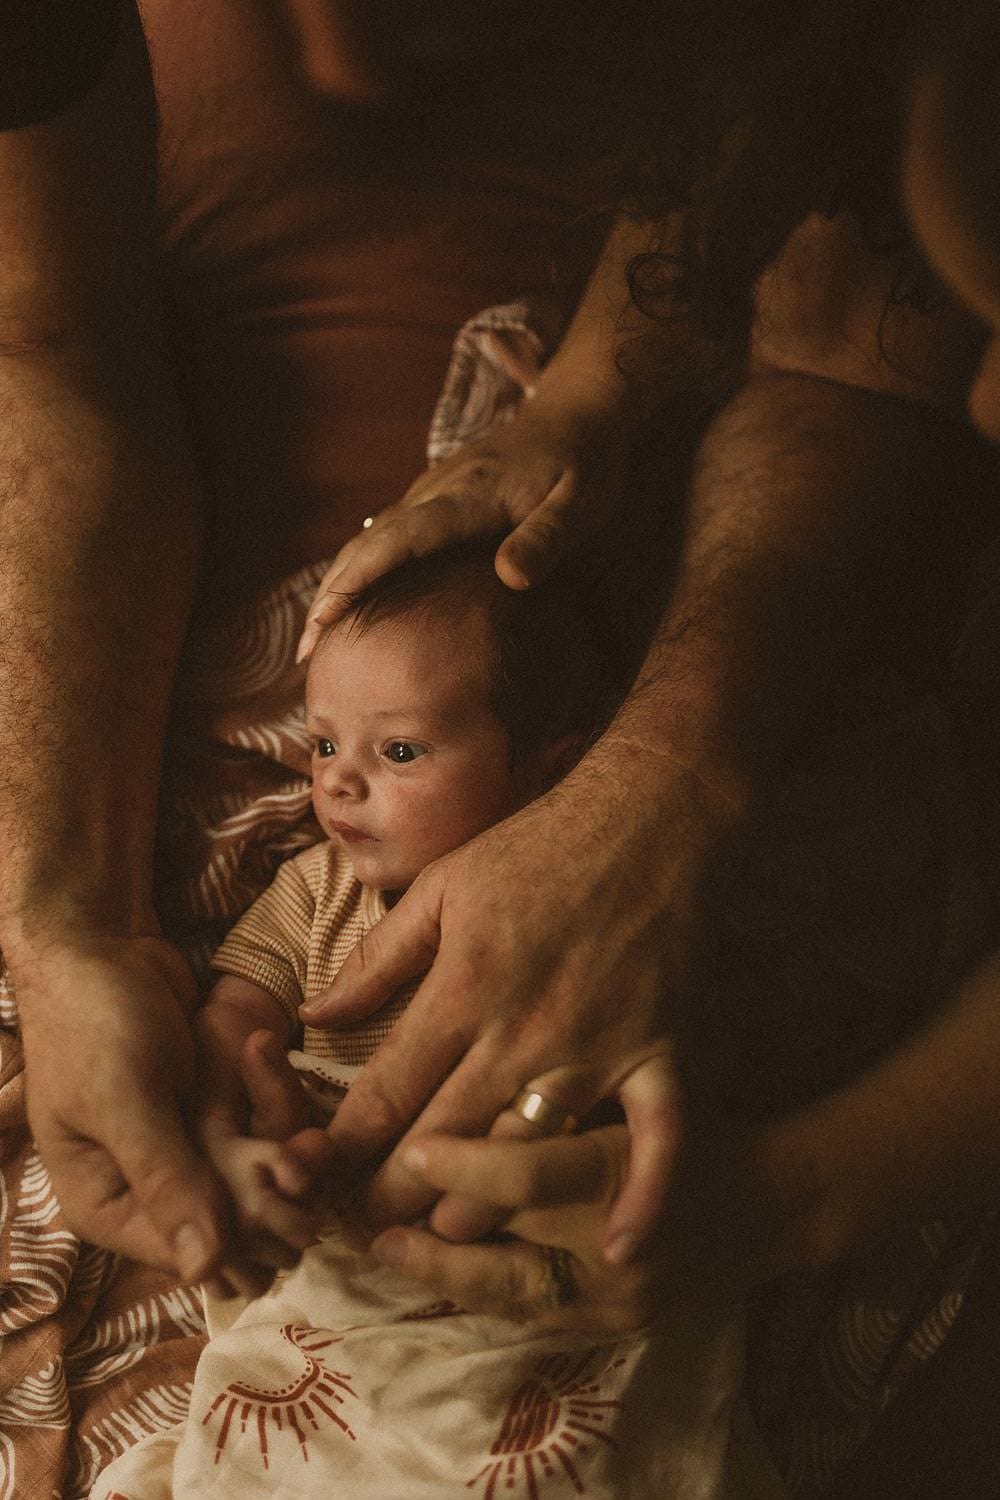 Newborn-photography-sydney-mum-dad-hands-around-baby